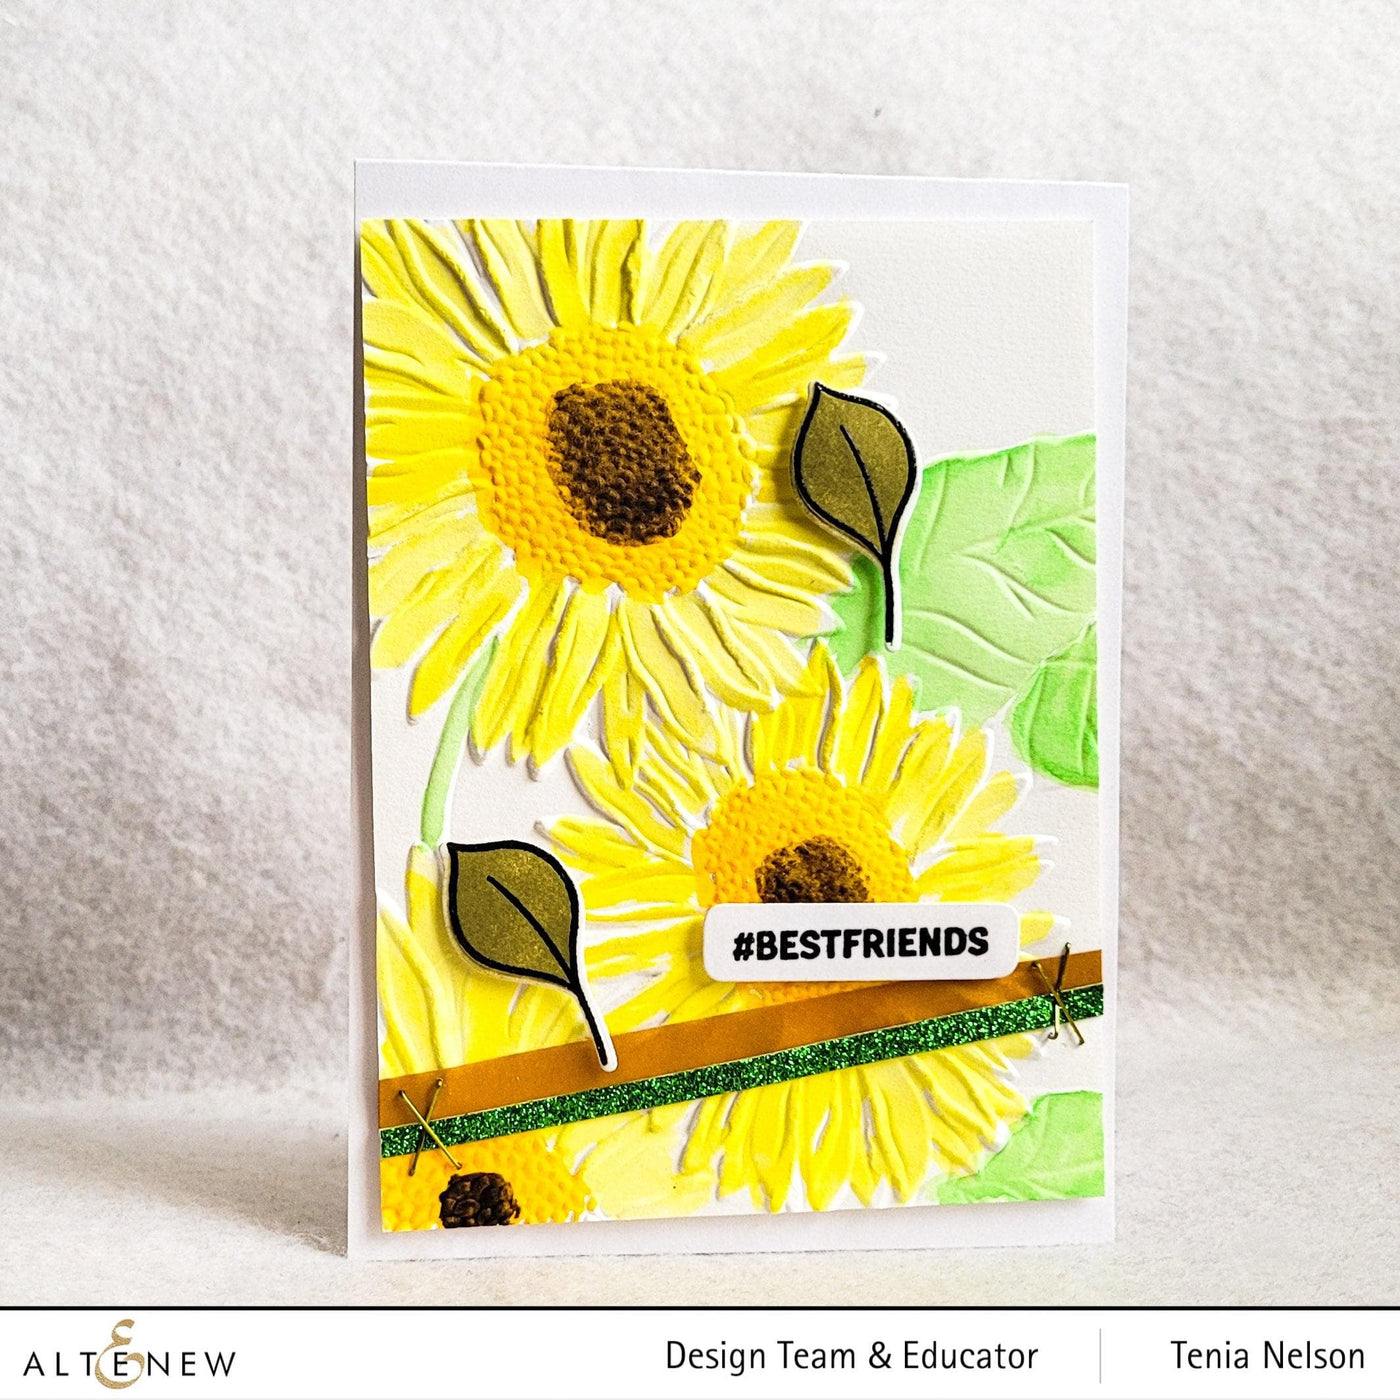 Part A-Glitz Art Craft Co.,LTD Embossing Folder Sunflower Bundle 3D Embossing Folder